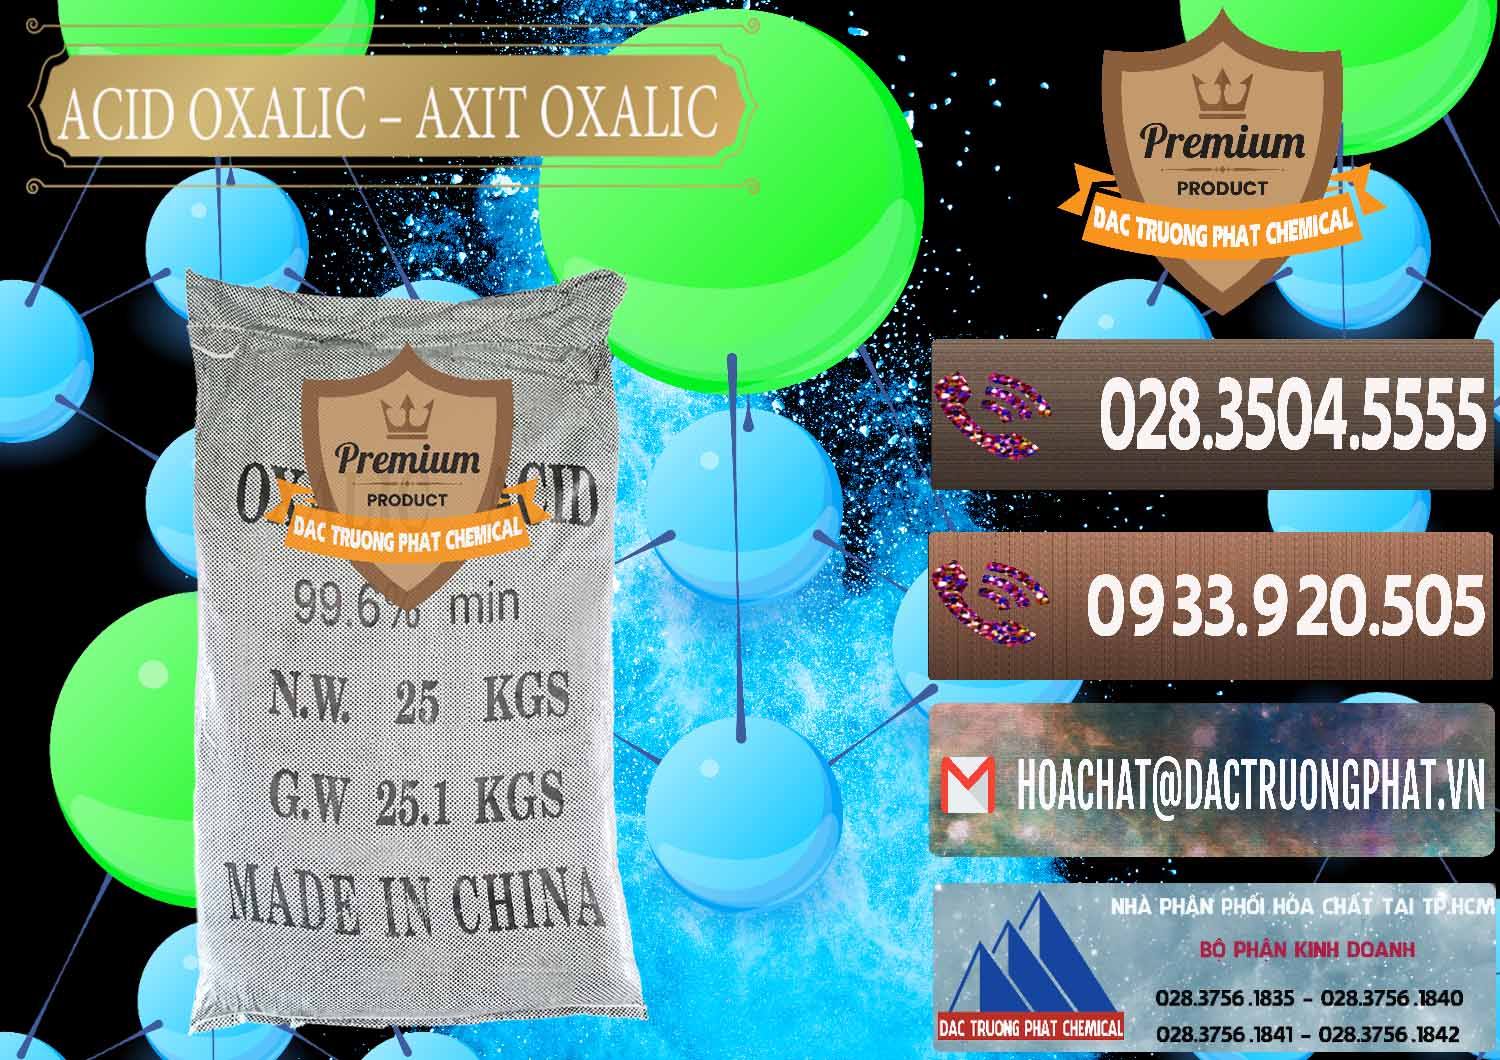 Cty bán & phân phối Acid Oxalic – Axit Oxalic 99.6% Trung Quốc China - 0014 - Công ty chuyên kinh doanh và phân phối hóa chất tại TP.HCM - hoachatviet.net